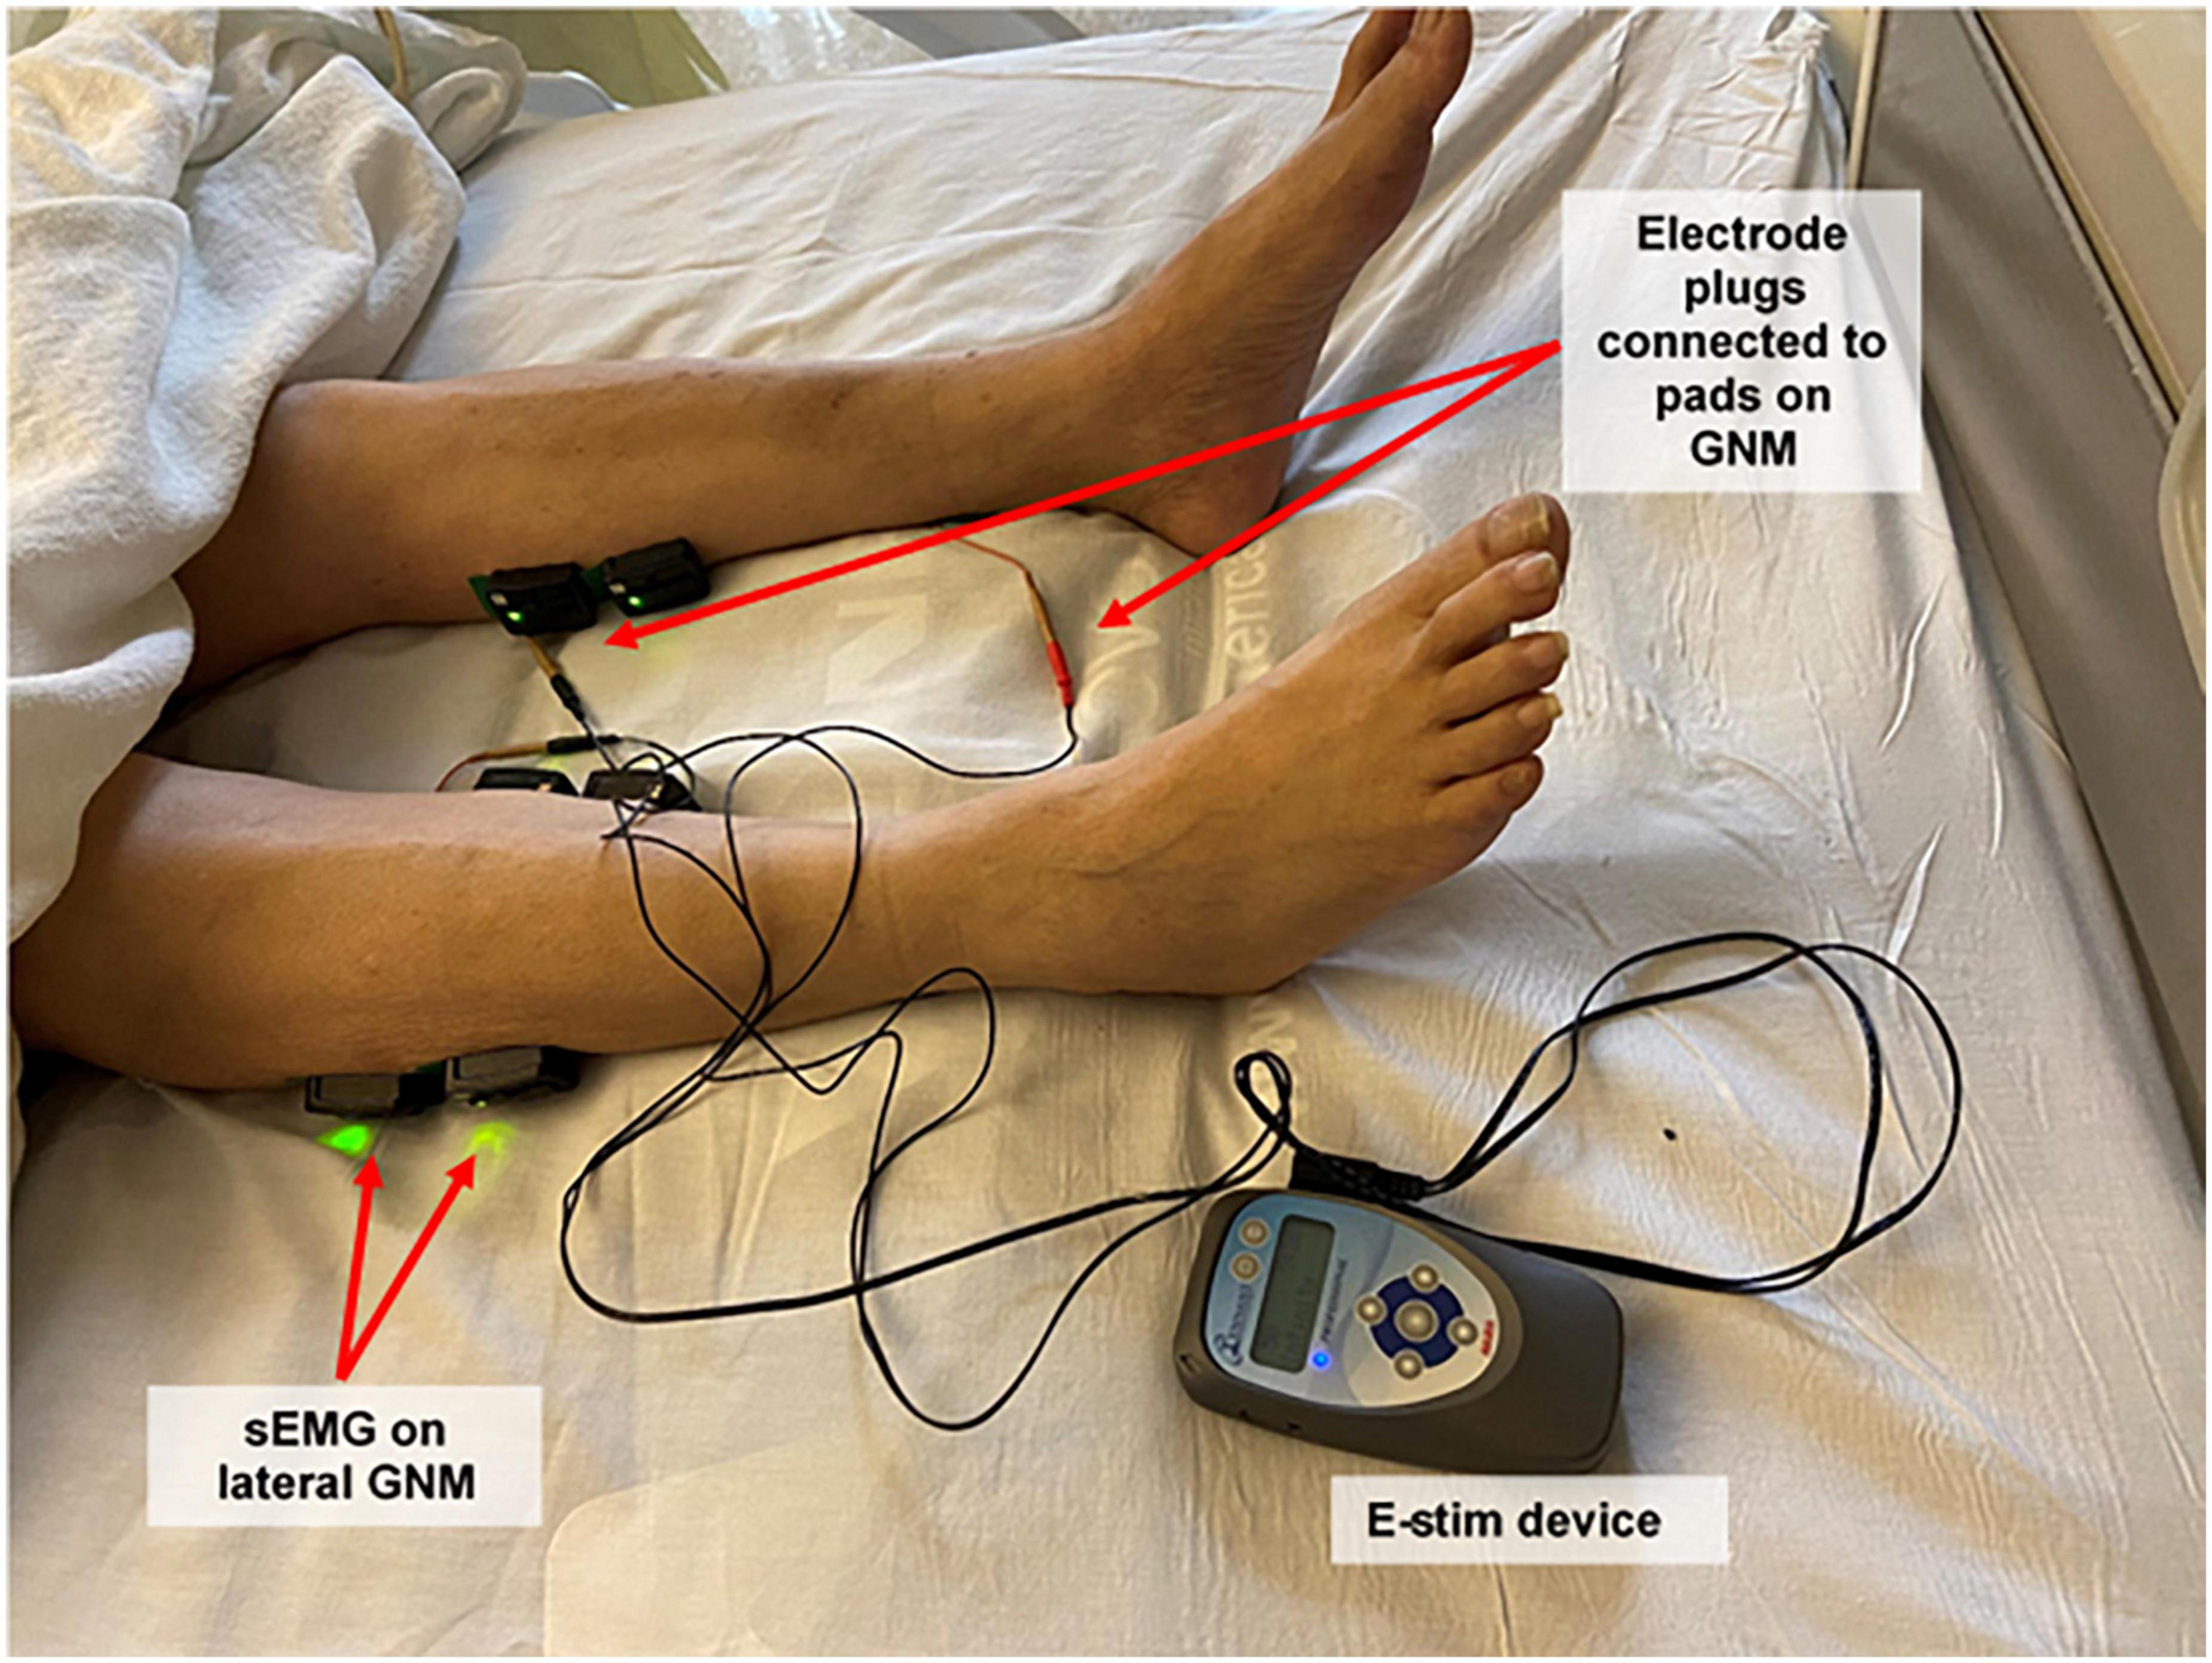 Electrical muscle stimulation - Wikipedia